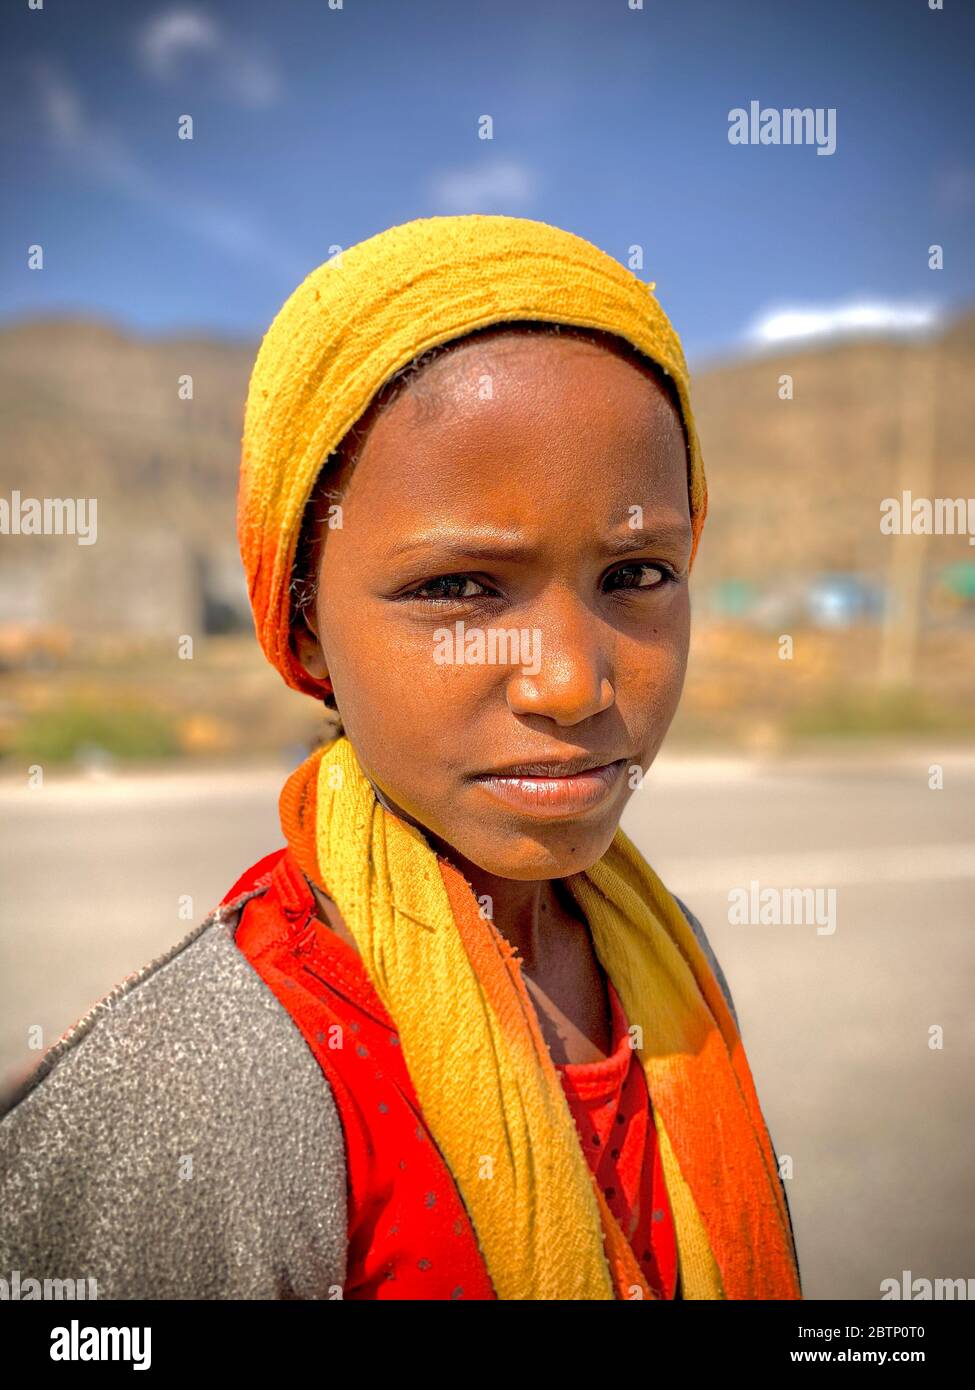 Jeune fille avec tête de lit musulmane traditionnelle, dépression de Danakil, région d'Afar, Éthiopie, Afrique Banque D'Images